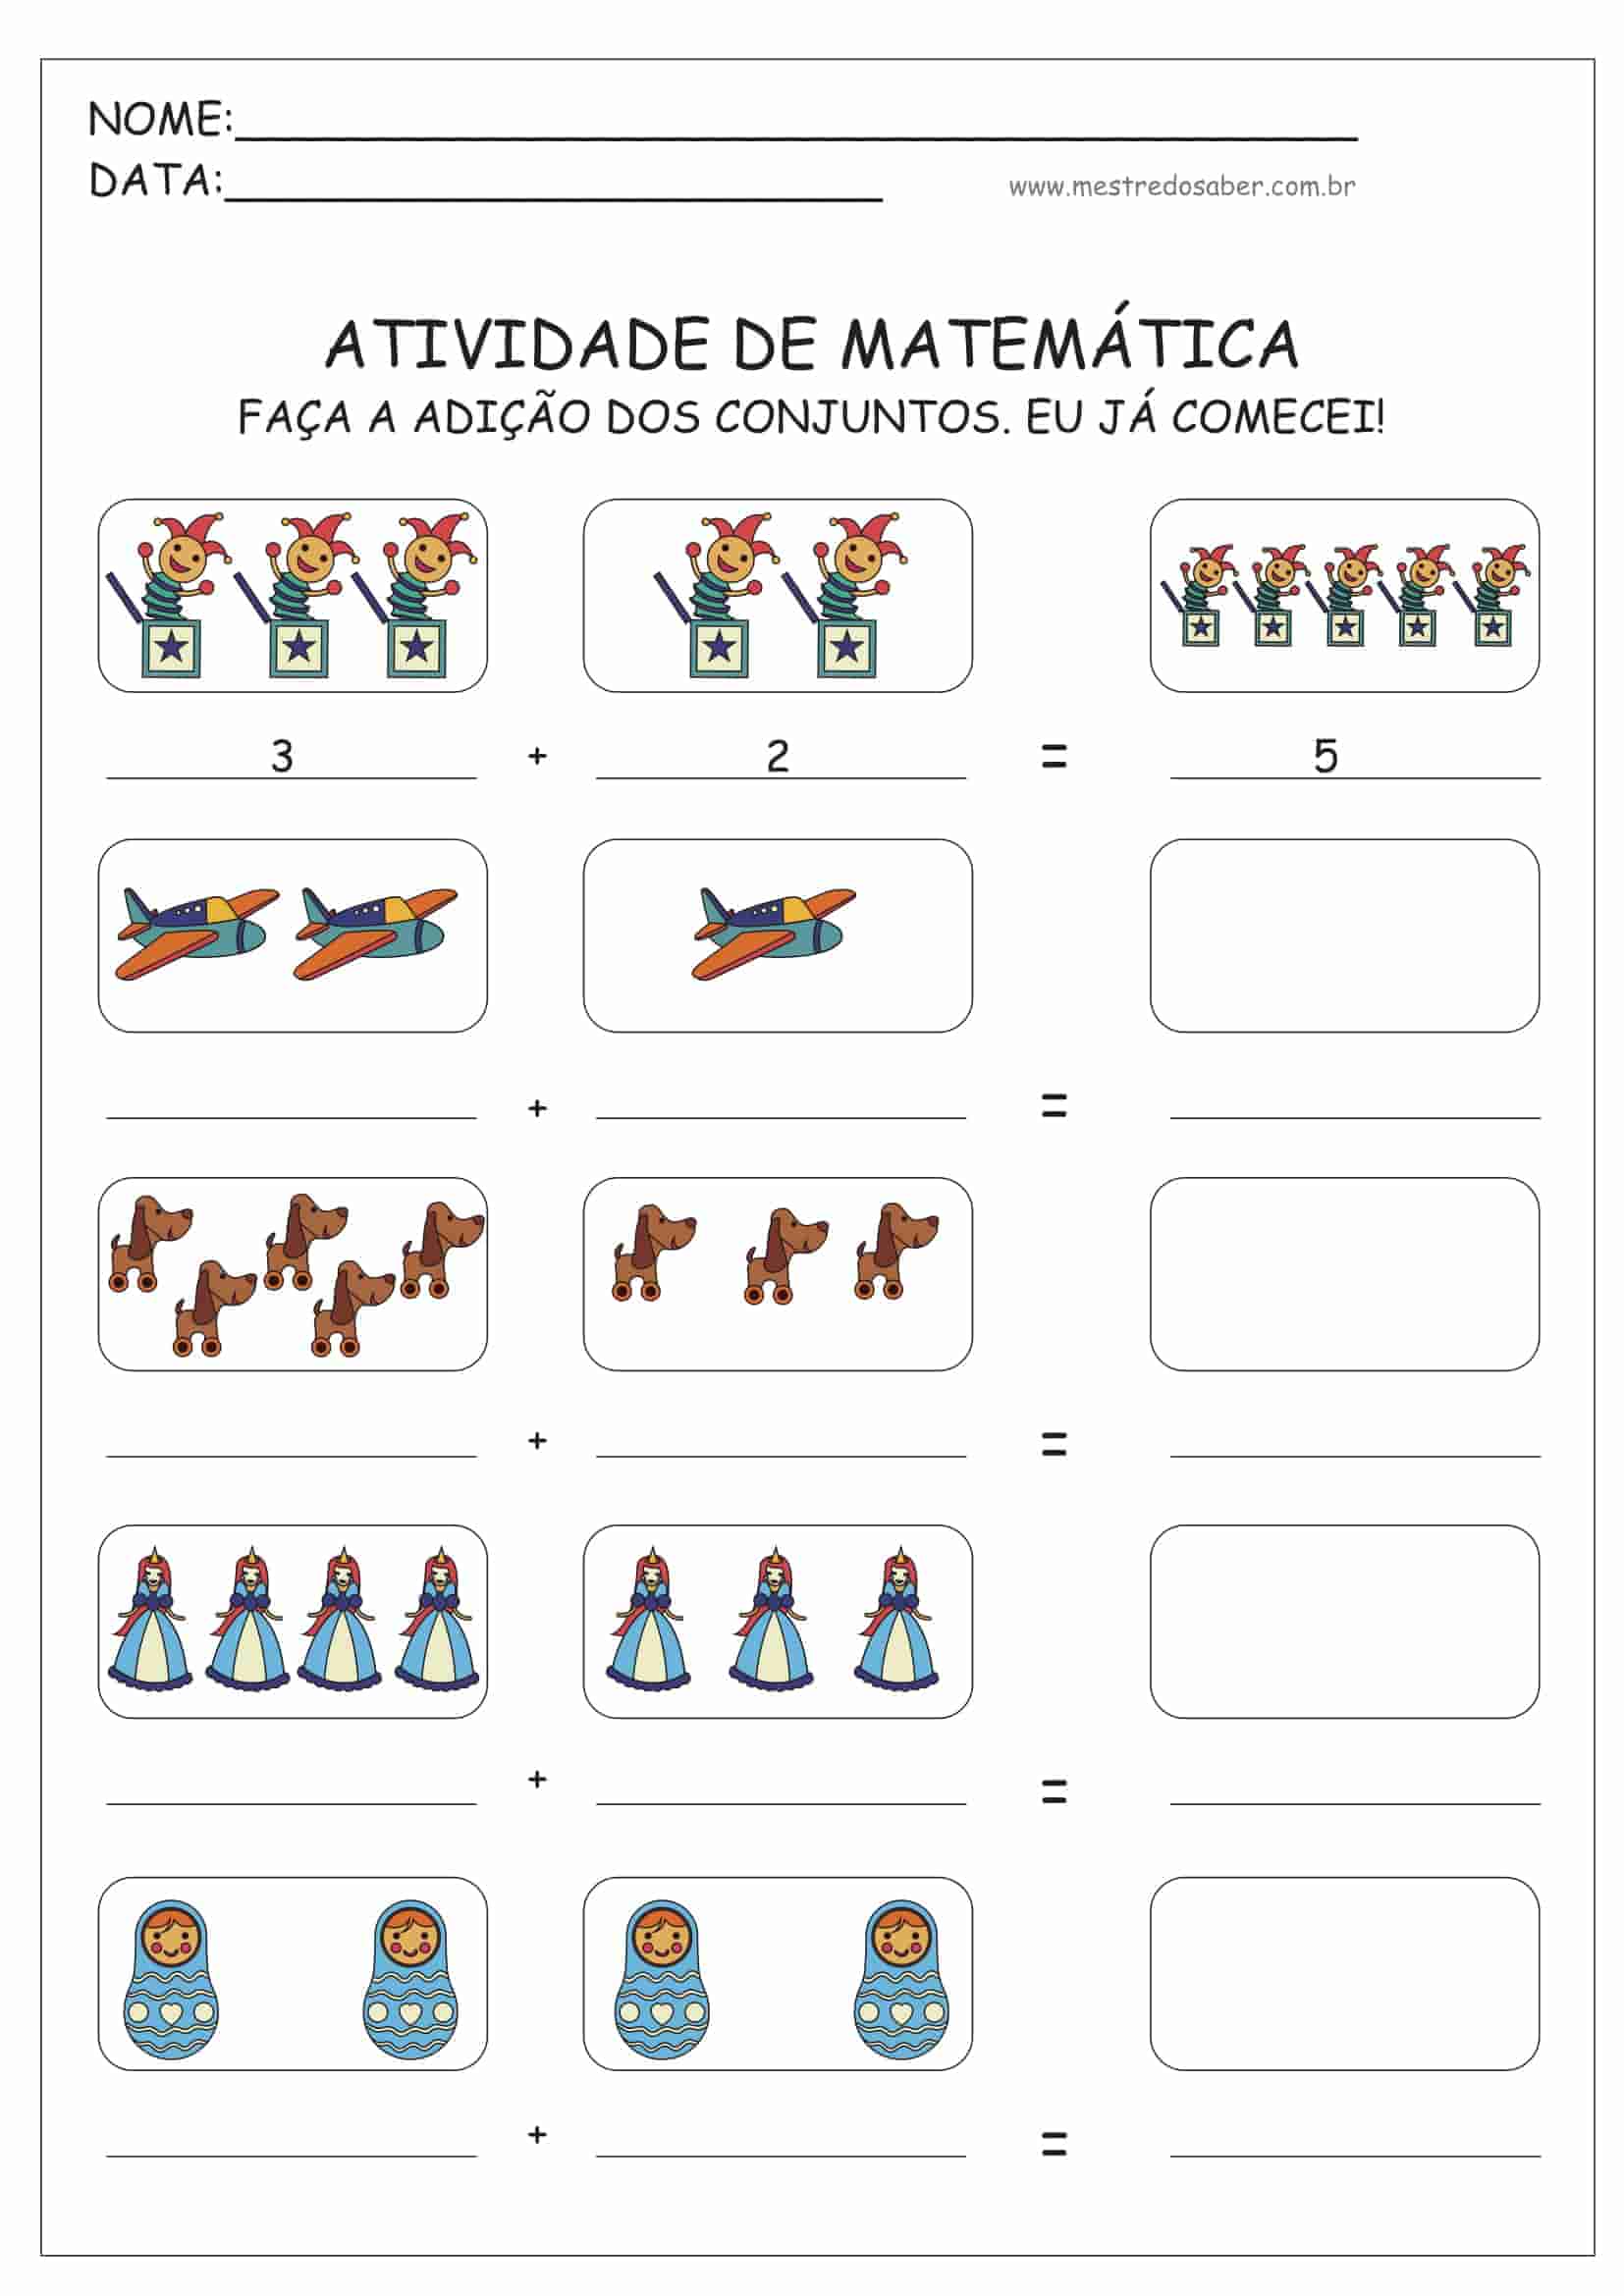 atividades matematica educação infantil para imprimir - Pesquisa Google  Jogos  educação infantil, Jogos matematicos educação infantil, Educação infantil